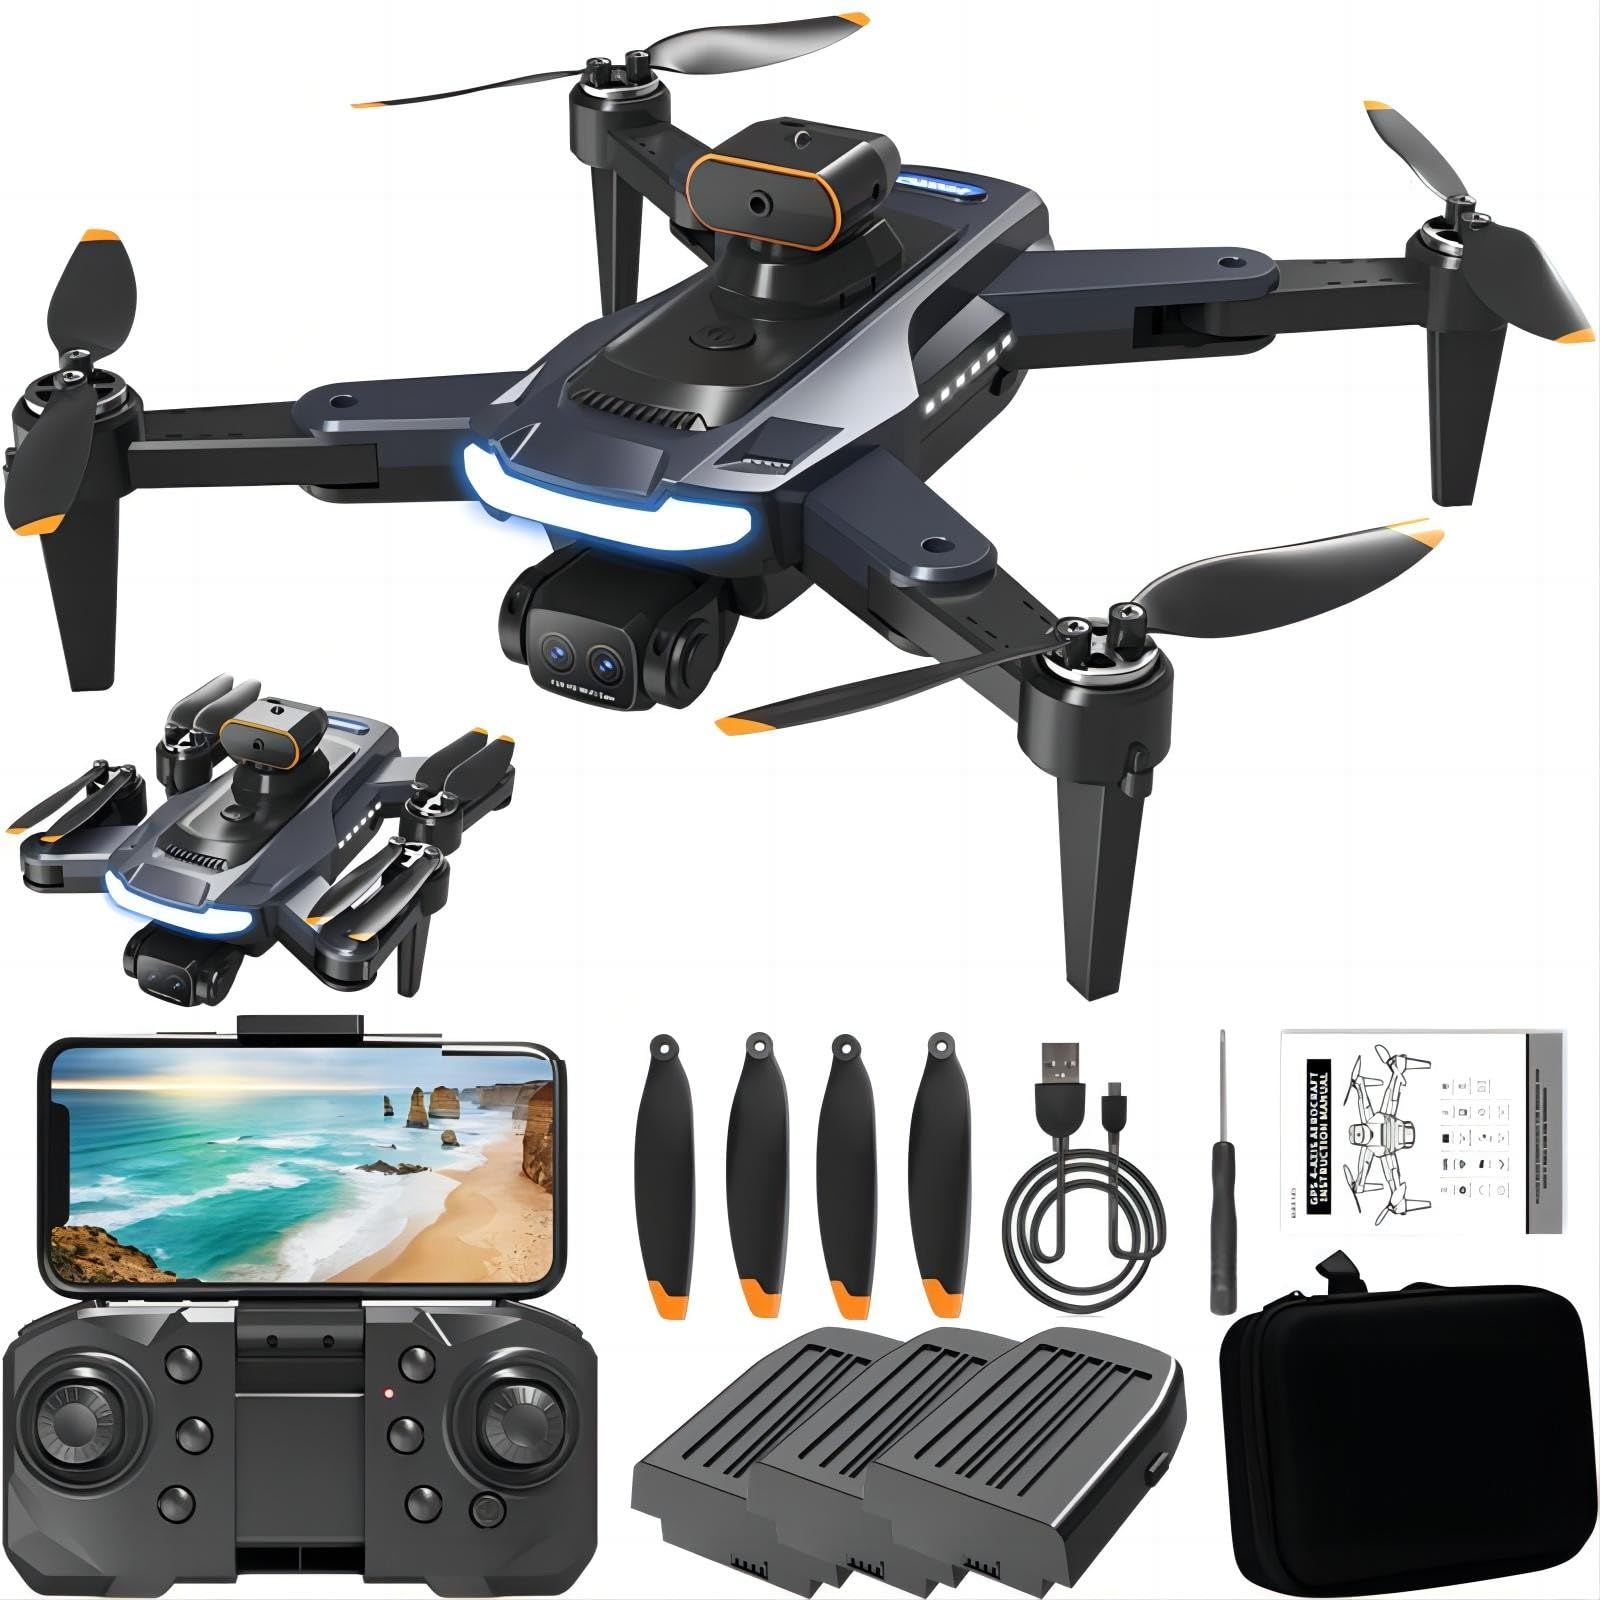 A14 Drohne mit Kamera 720P, 540° Hindernisvermeidung Drohne für Kinder Anfänger WiFi FPV RC Quadrocopter mit 3 Batterien Bürstenloser Motor Optische Flusspositionierung Headless Modus 3D-Flips von KUNOQXHA